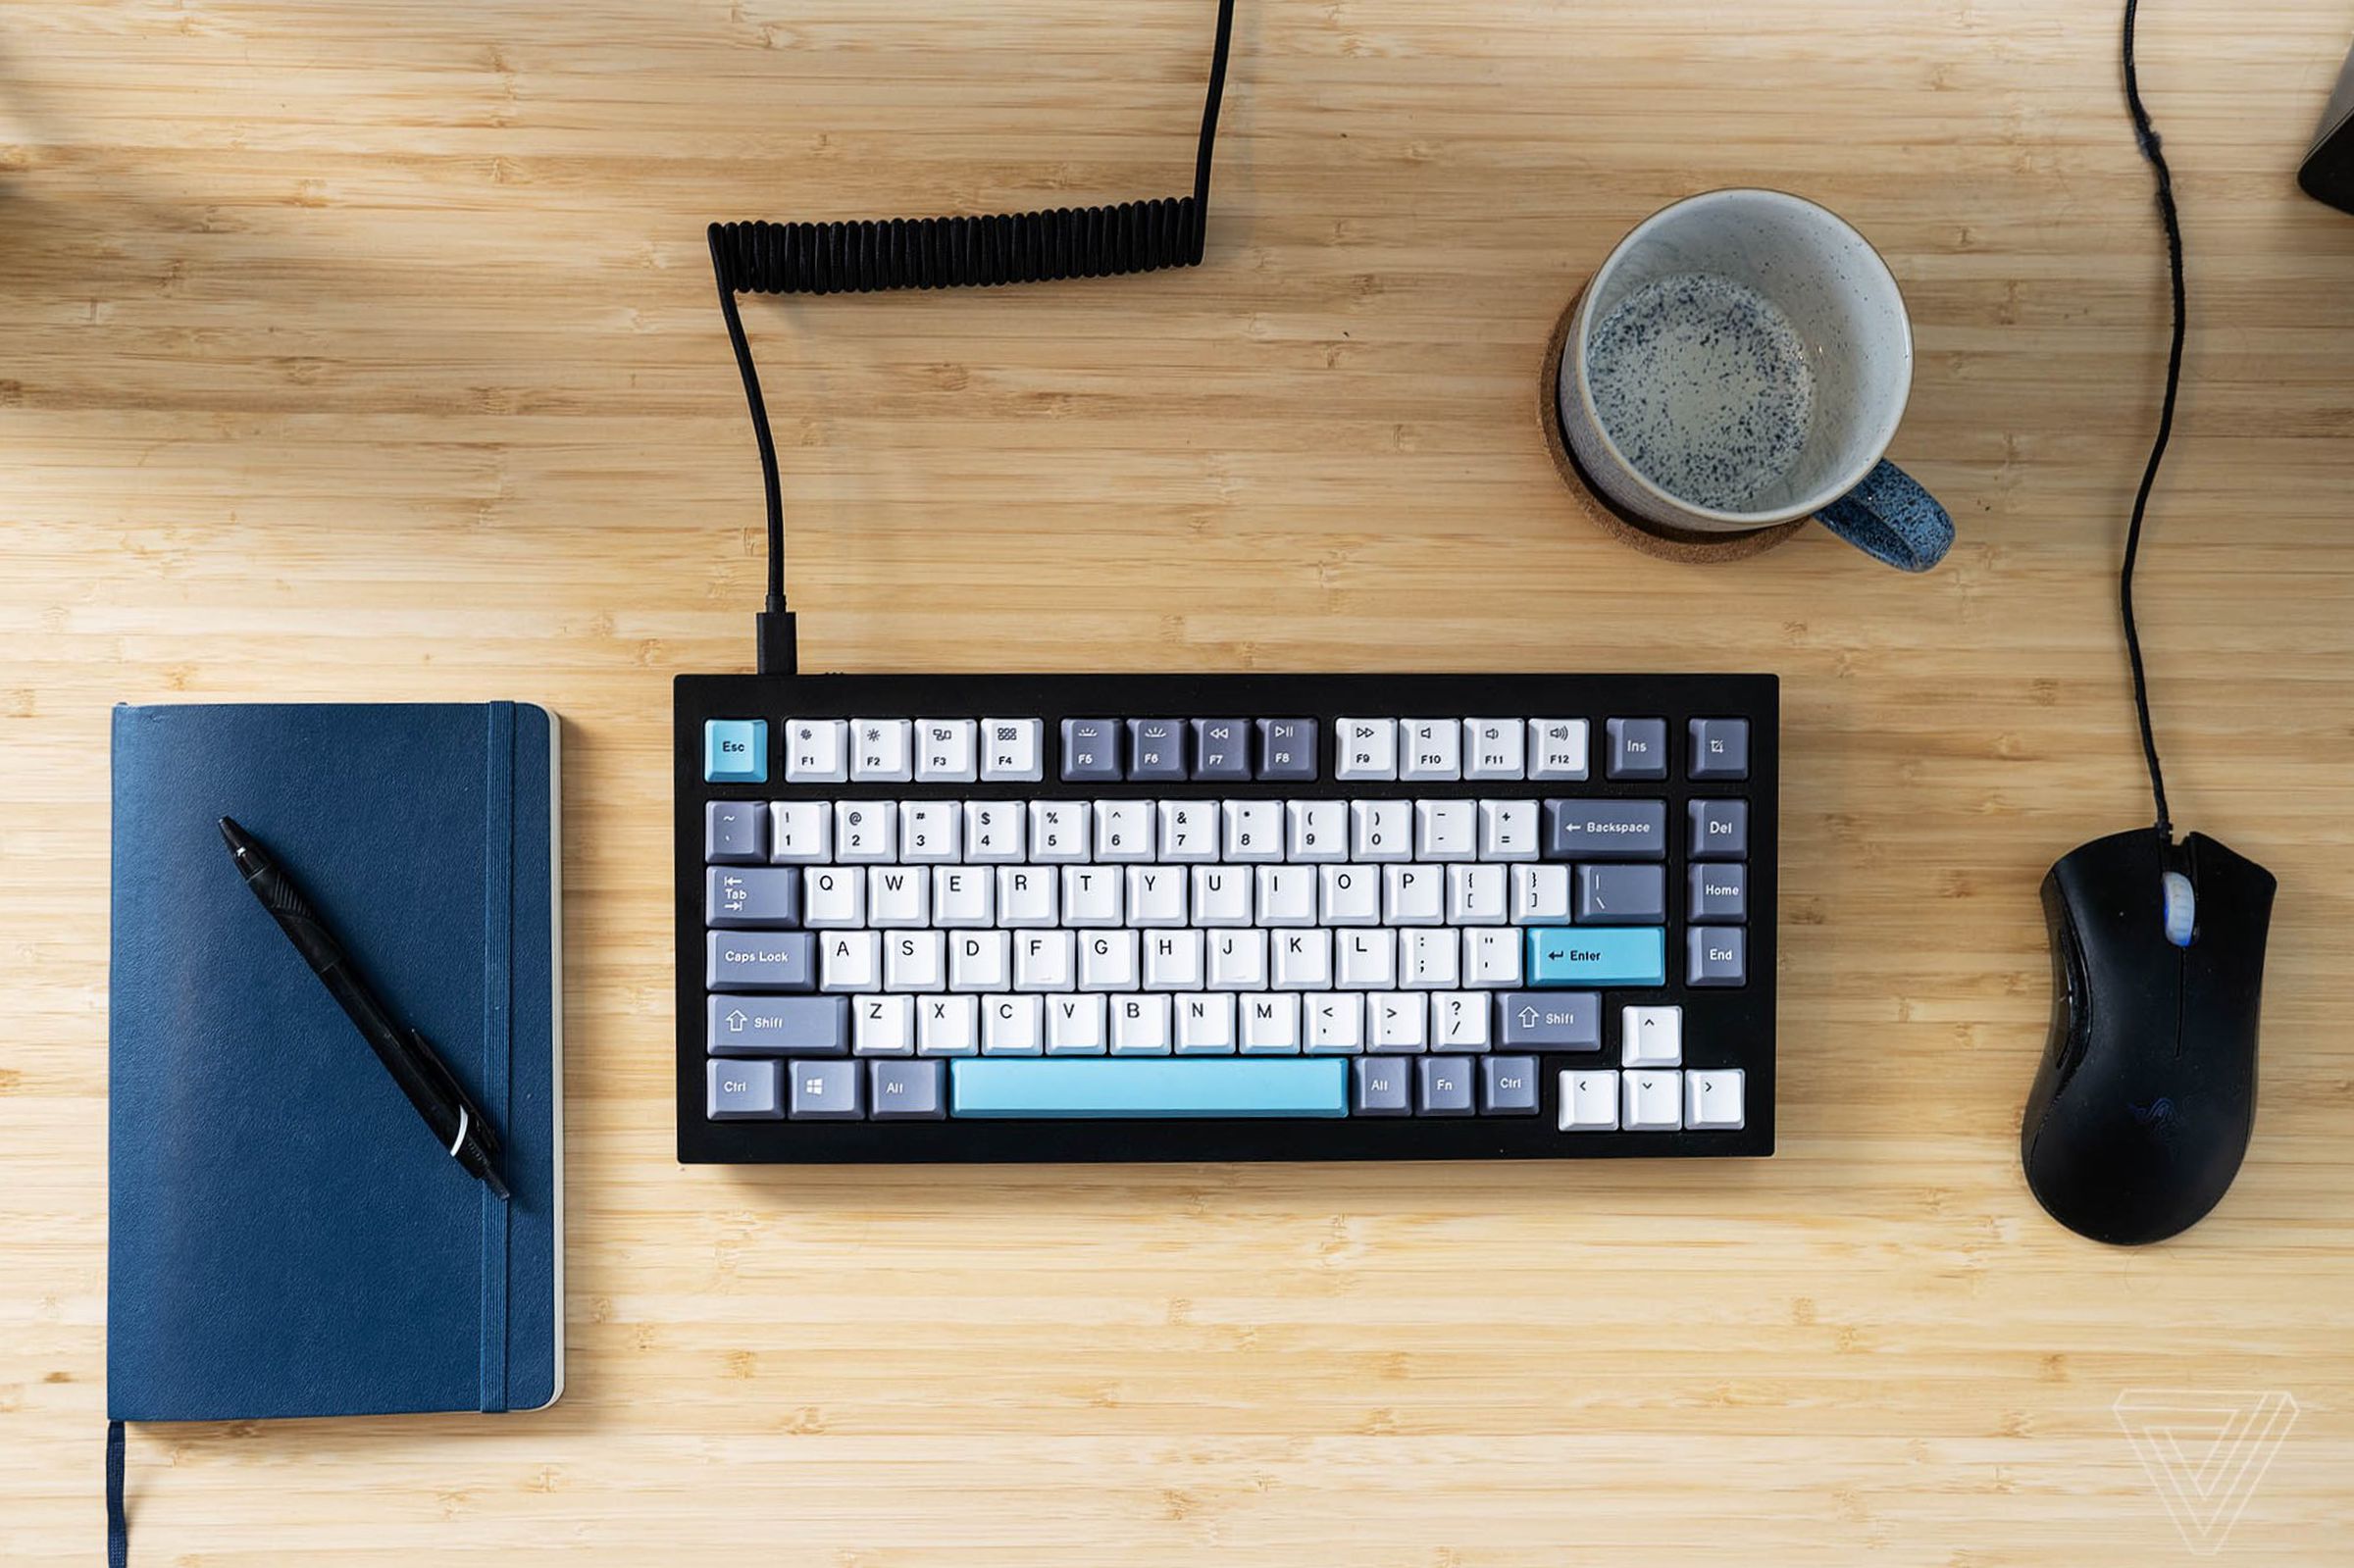 Keychron Q1 keyboard on a desk.